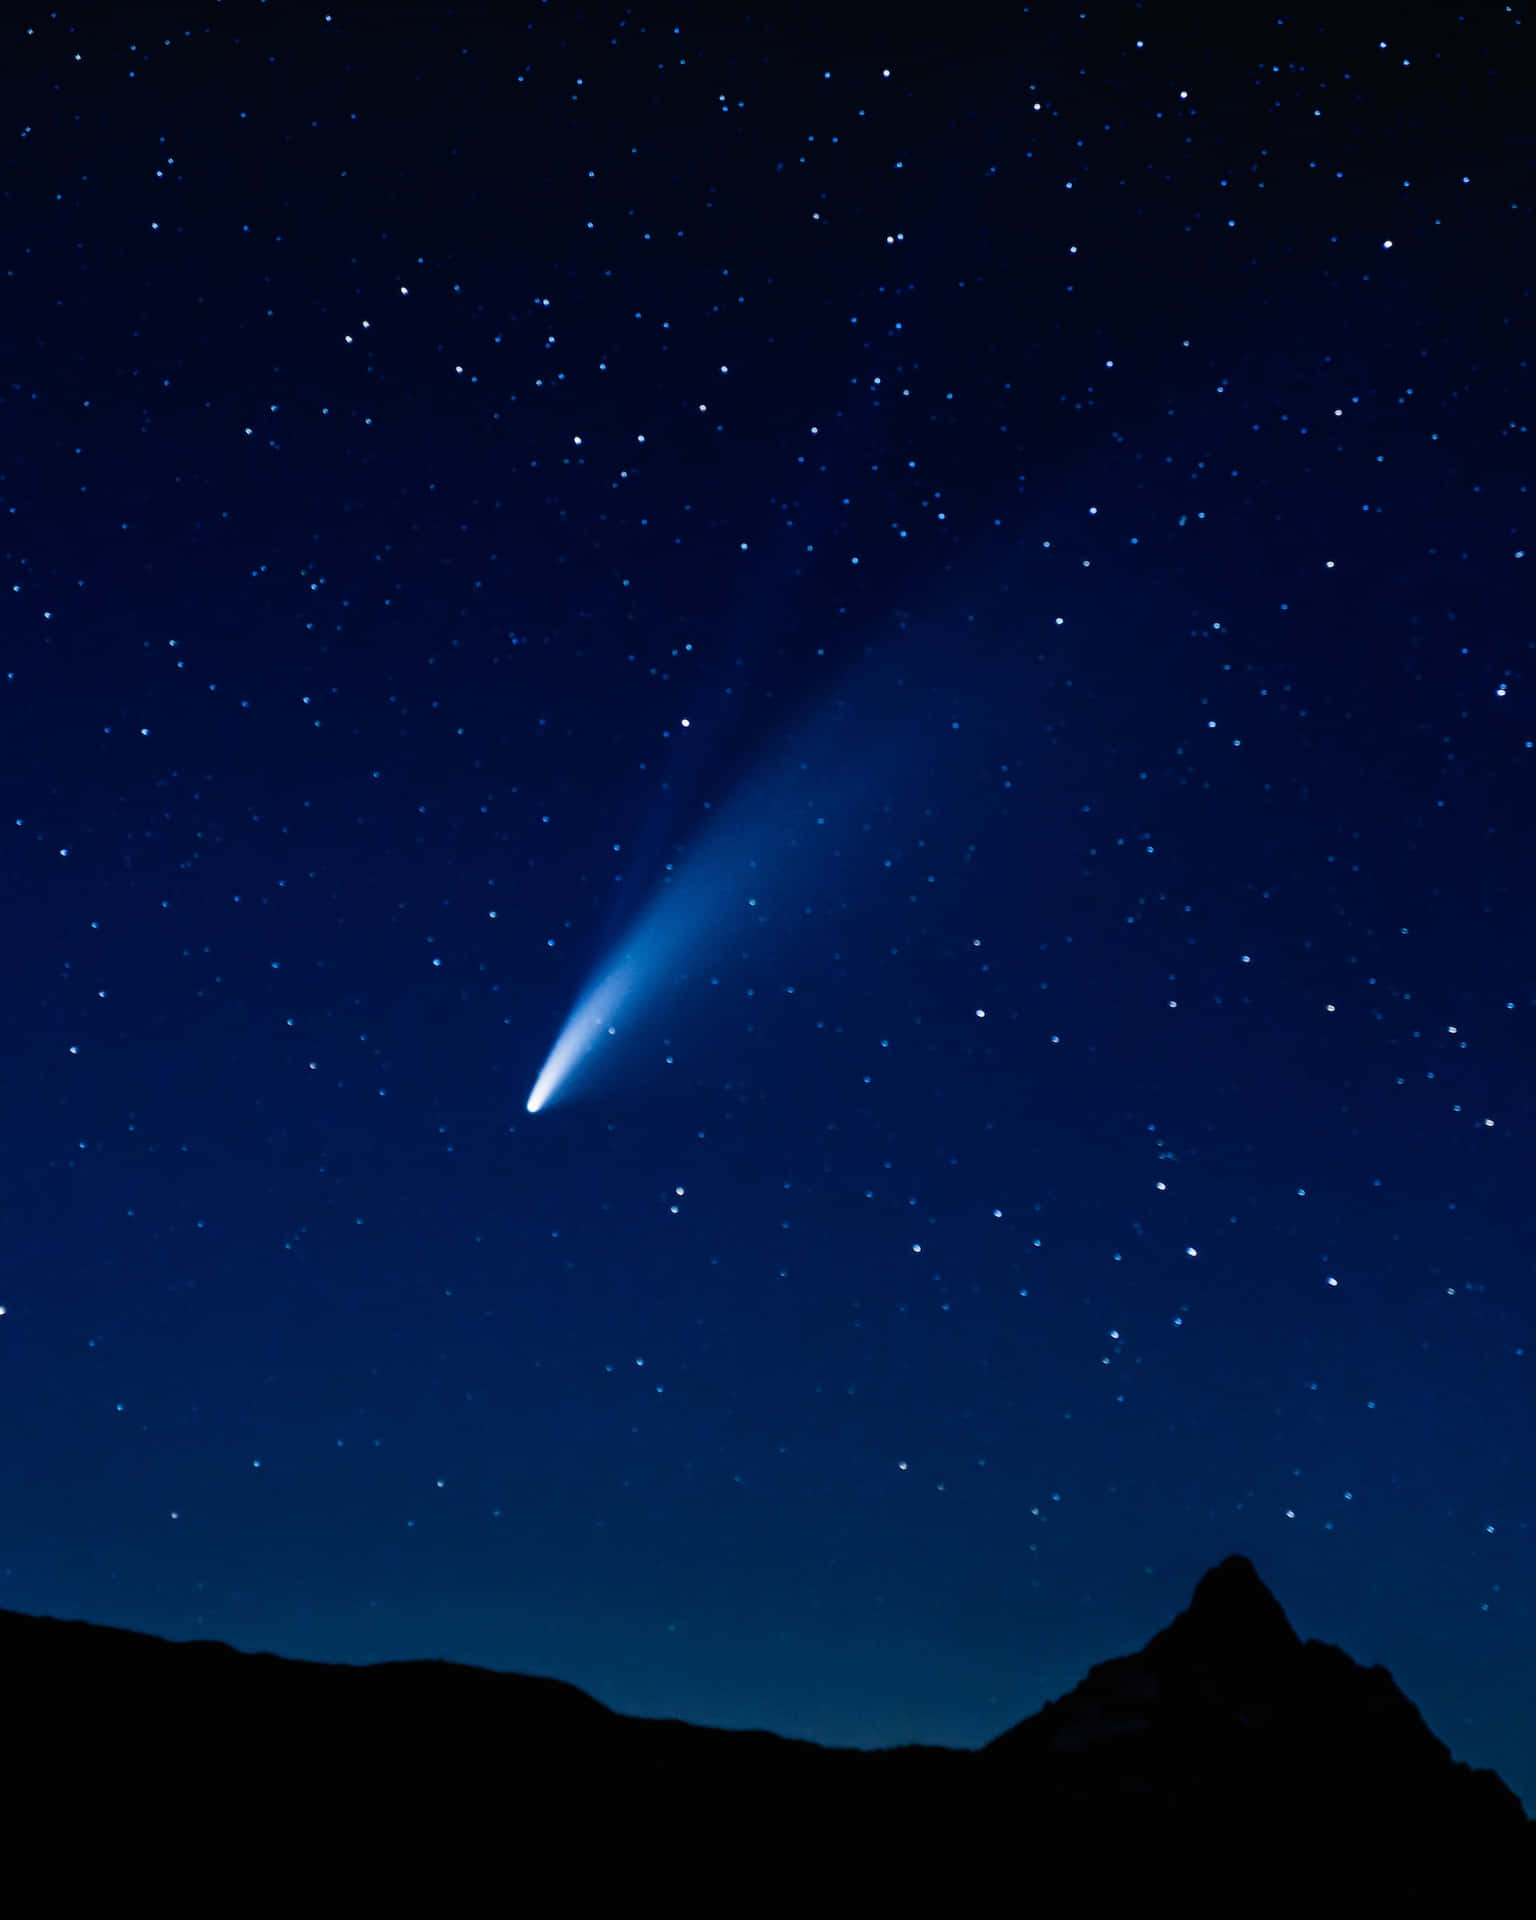 Spectacular Comet in the Night Sky Wallpaper